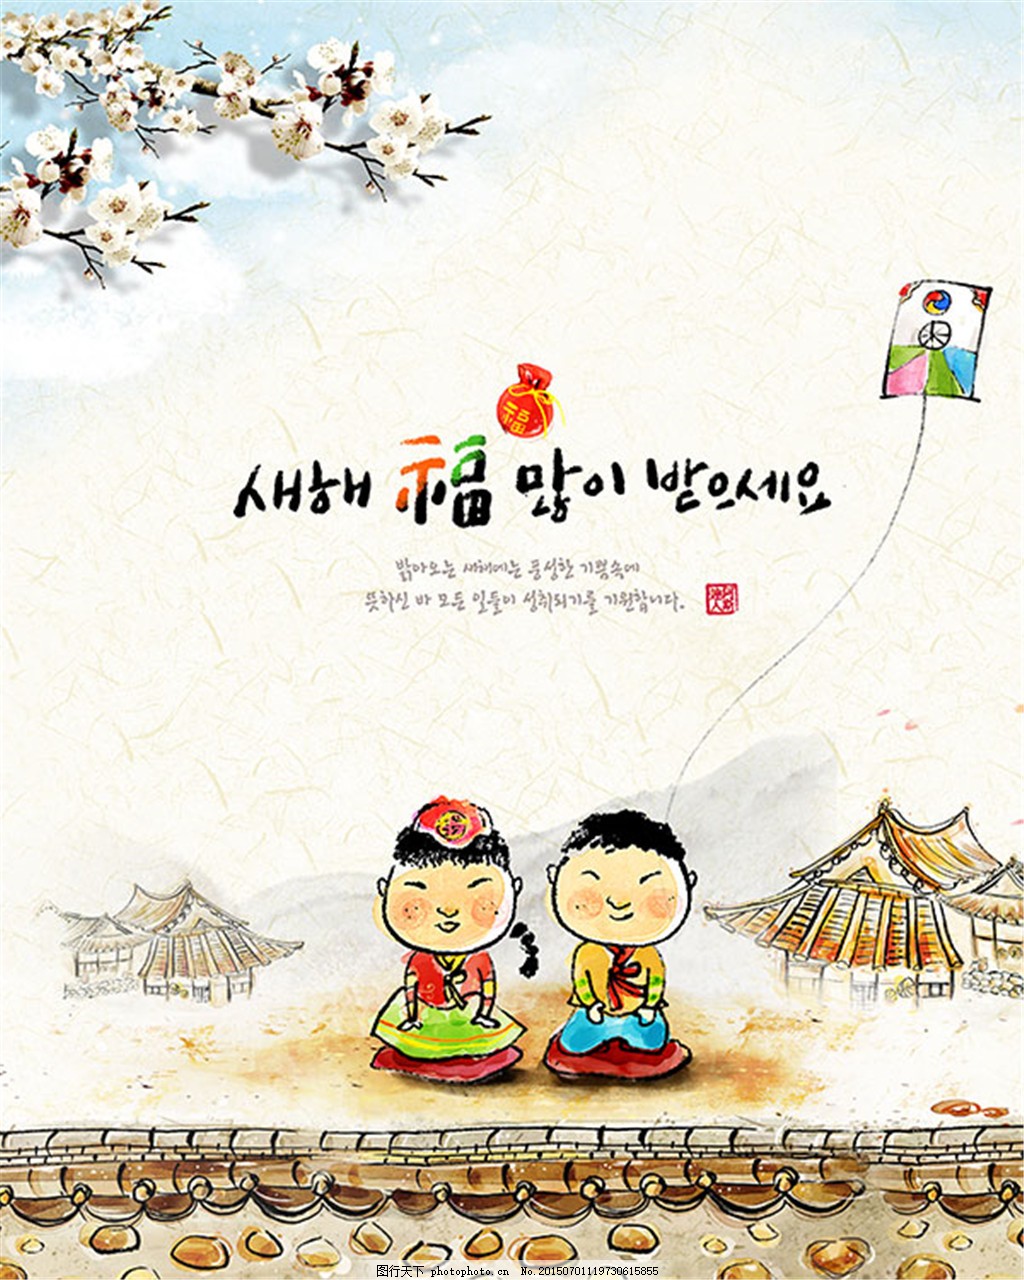 韩国新年设计 向量例证. 插画 包括有 字符, 庆祝, 看板卡, 聚会所, 节日, 逗人喜爱, 现有量 - 160446068